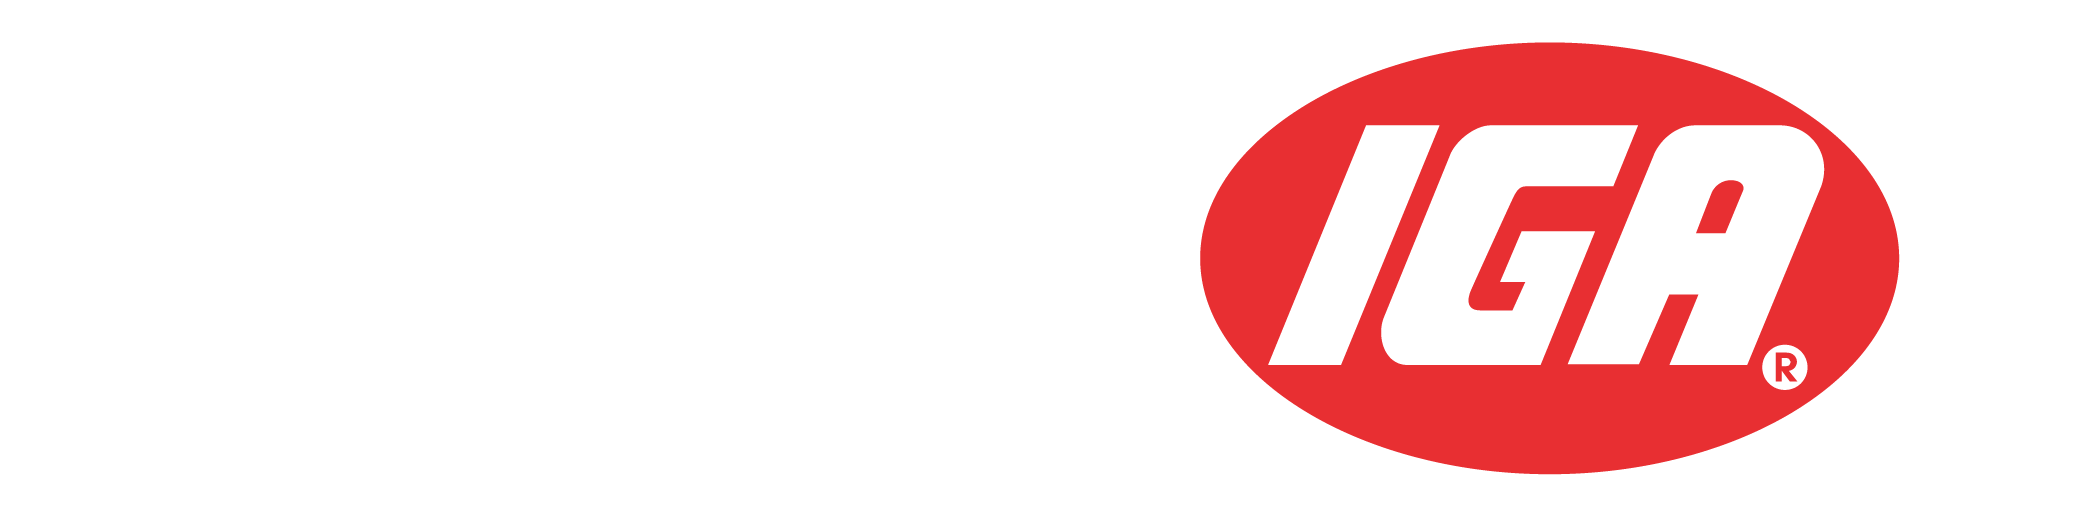 Pomona IGA